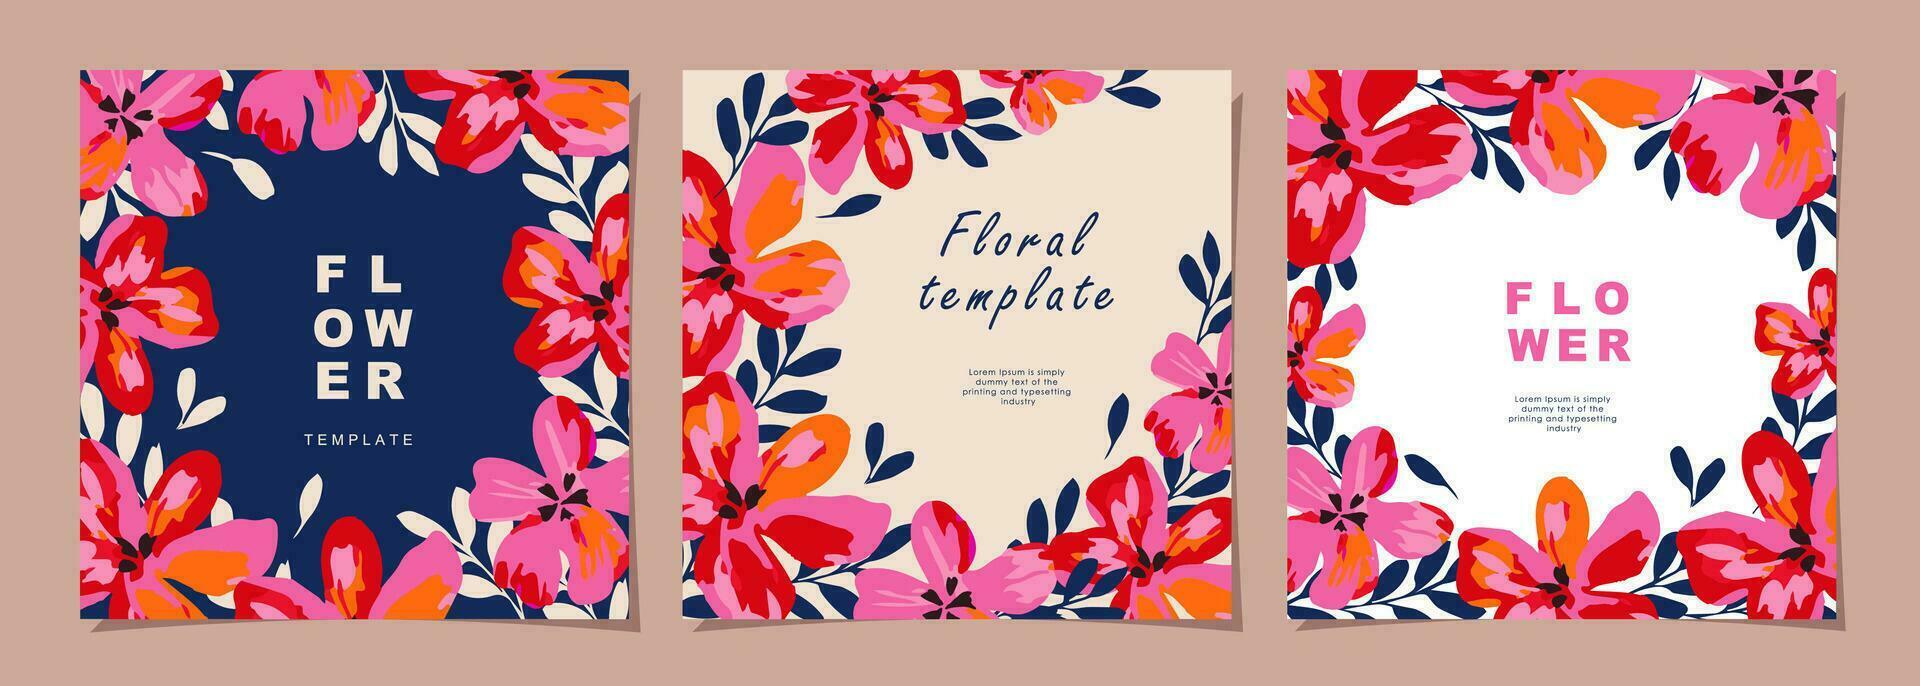 floral modelo conjunto para póster, tarjeta, cubrir, etiqueta, bandera en moderno minimalista estilo y sencillo verano diseño plantillas con flores y plantas. vector